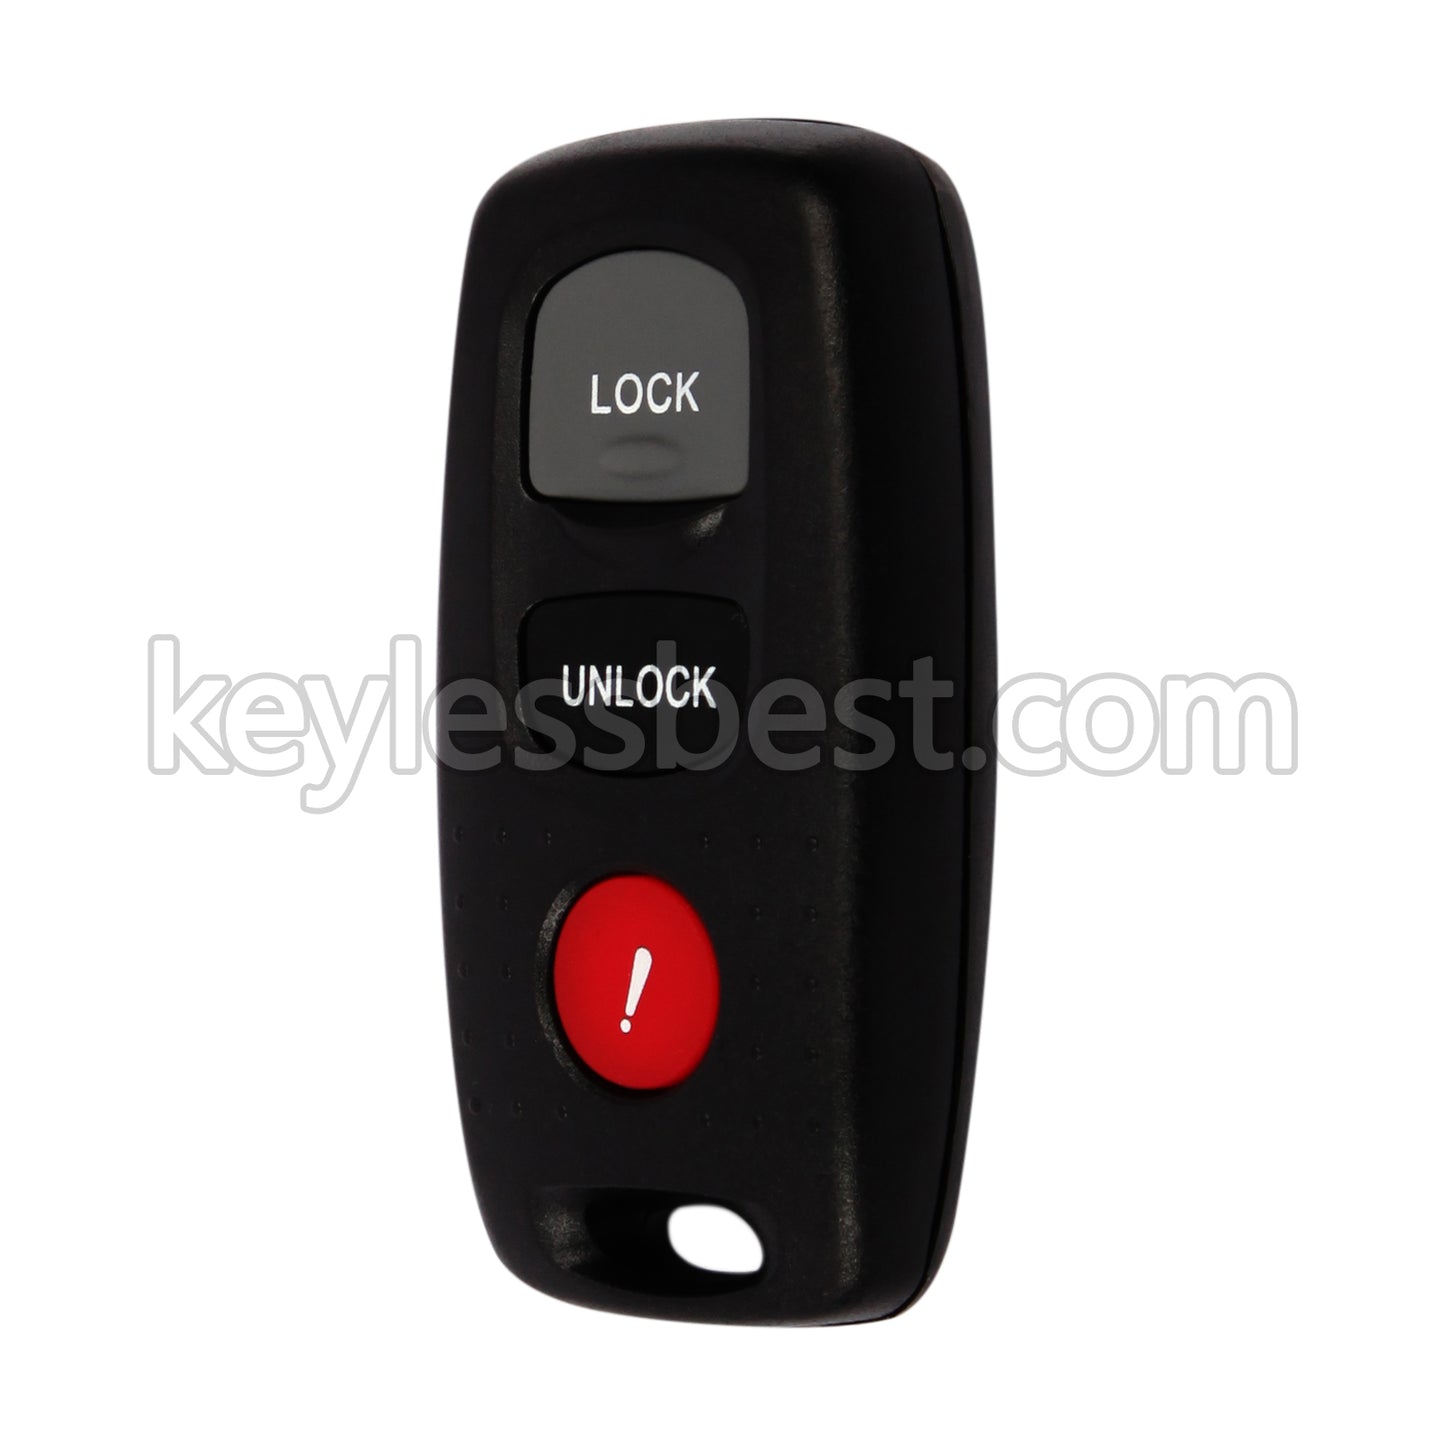 2007 - 2009 Mazda 3 4-Door 5-Door Mazdaspeed 3 / 4 Buttons Remote Key / KPU41794 / 313.8MHz